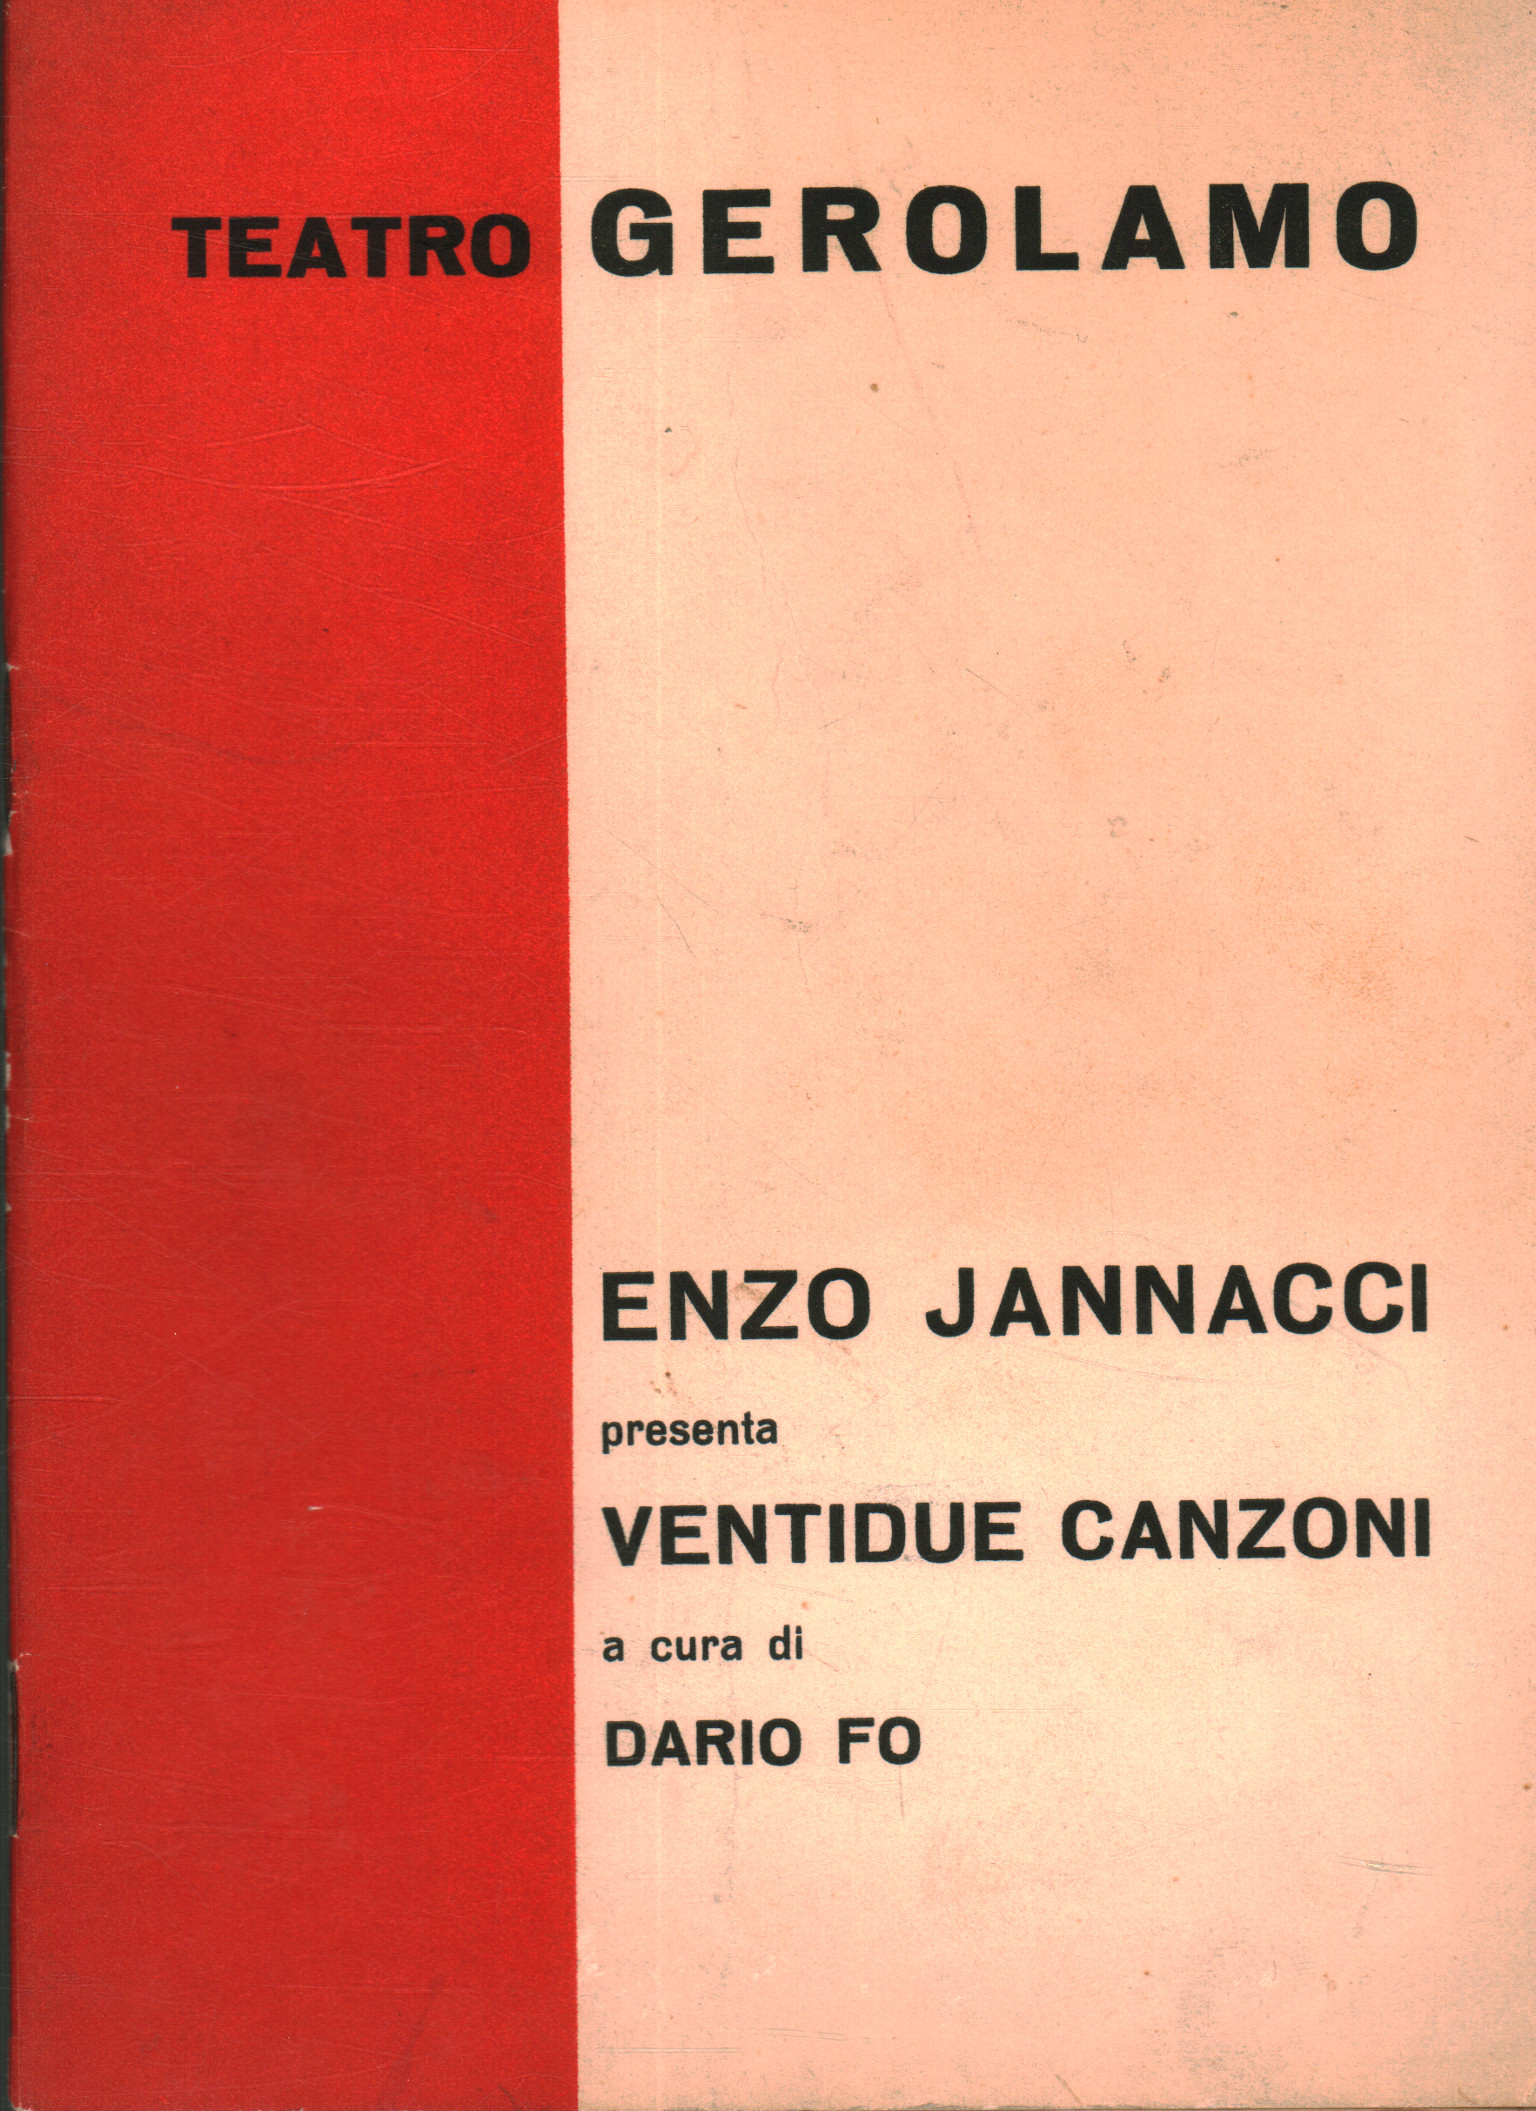 Ventidue canzoni, Enzo Jannacci